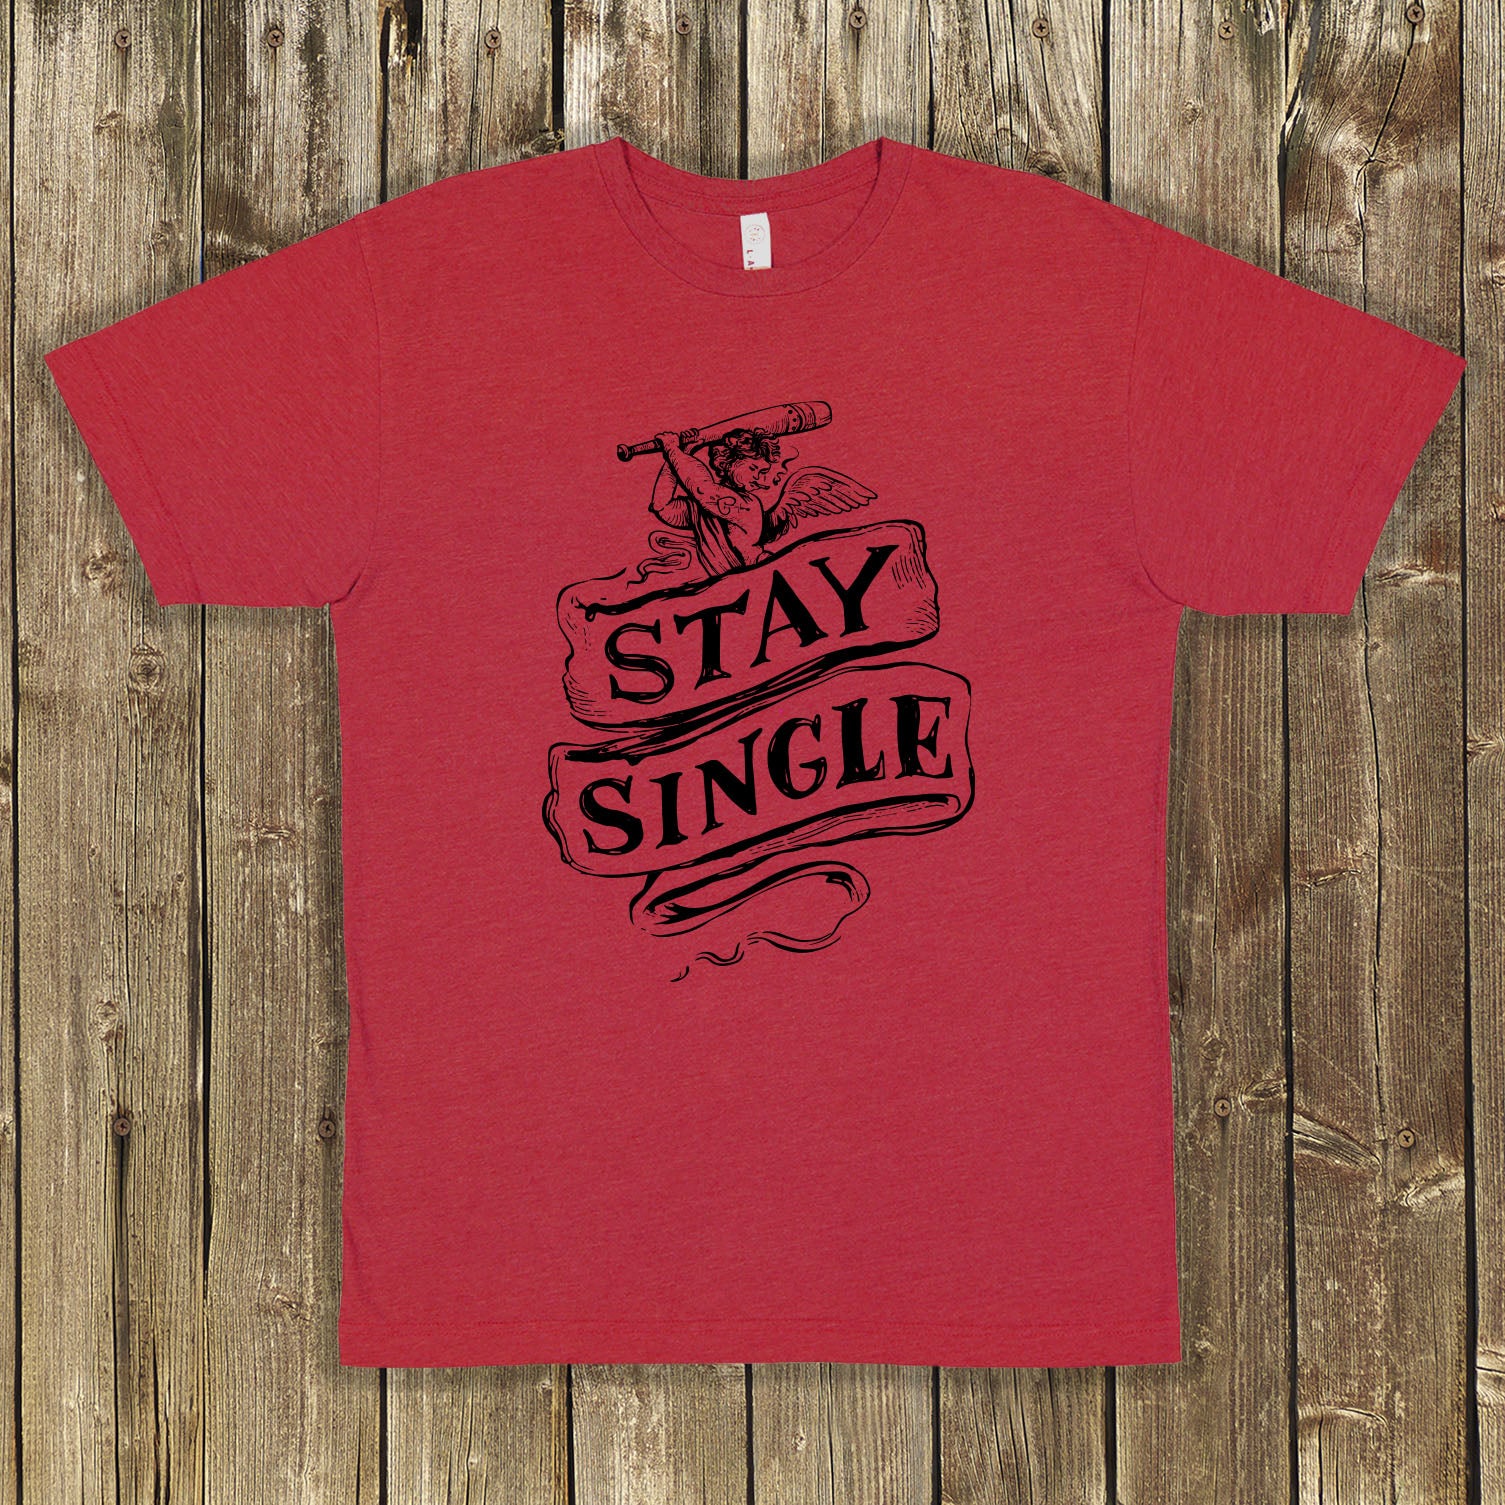 Stay Single Shirt